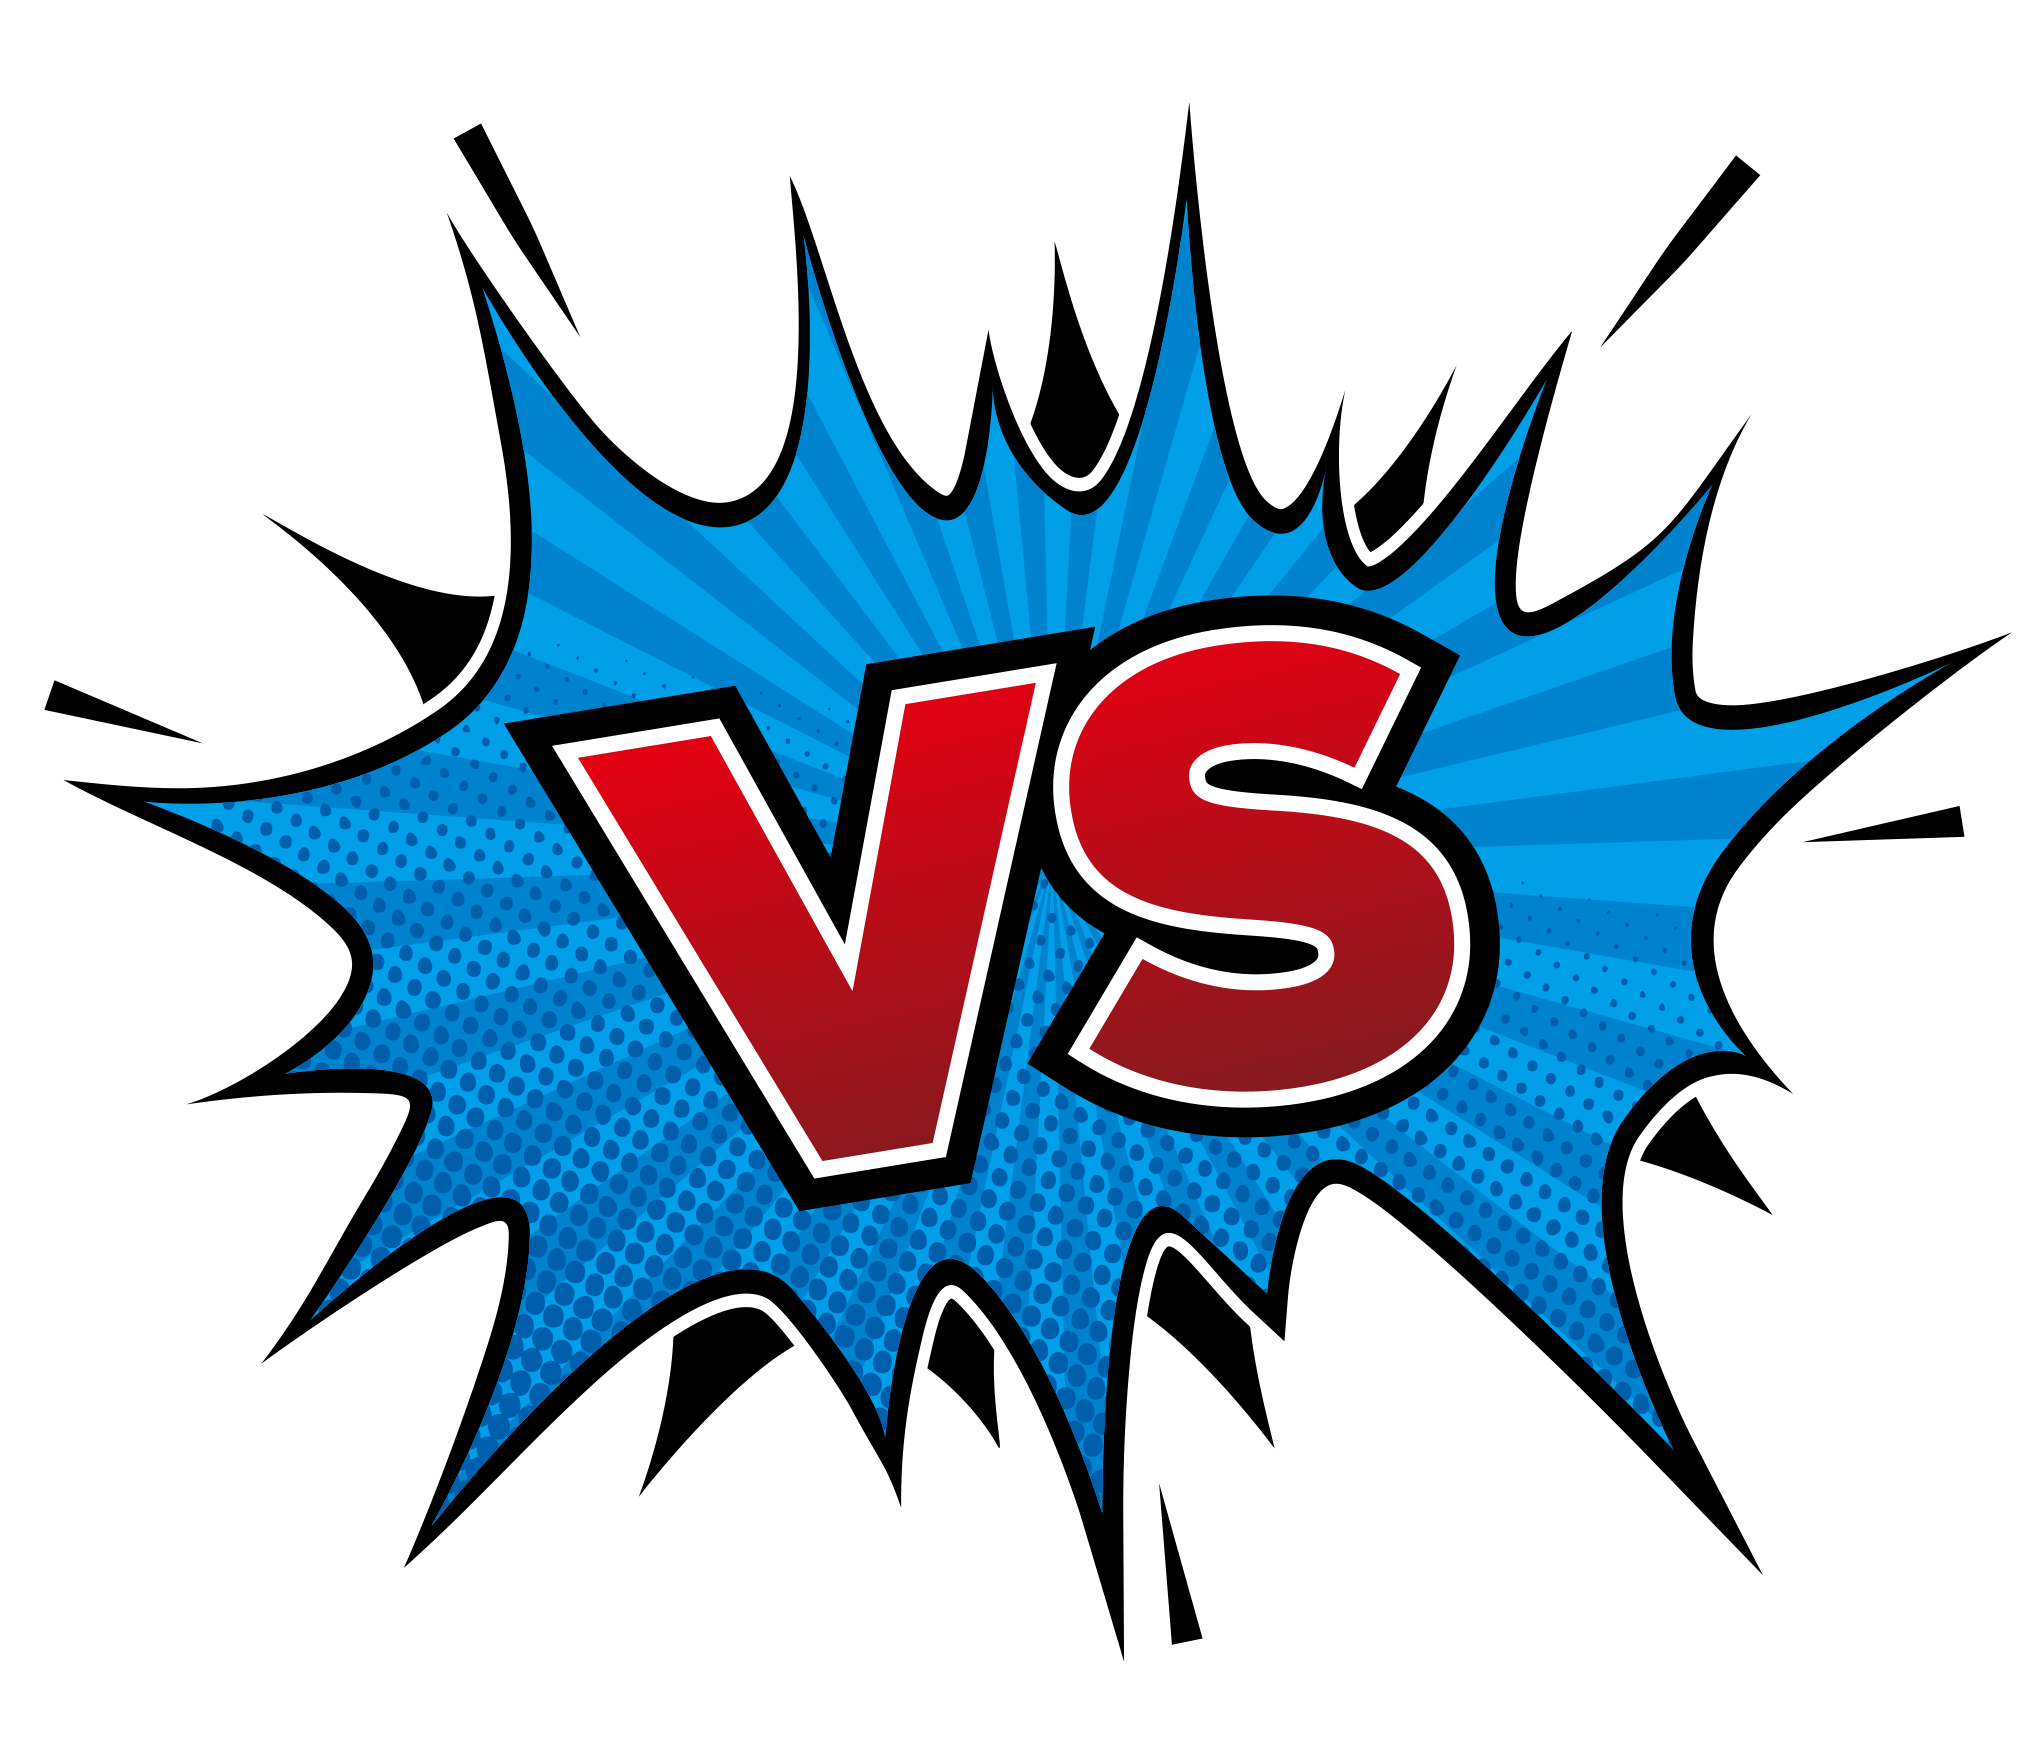 Vs Versus Logo Vector Illustration Stock Vector (Royalty Free) 1039841461 |  Shutterstock